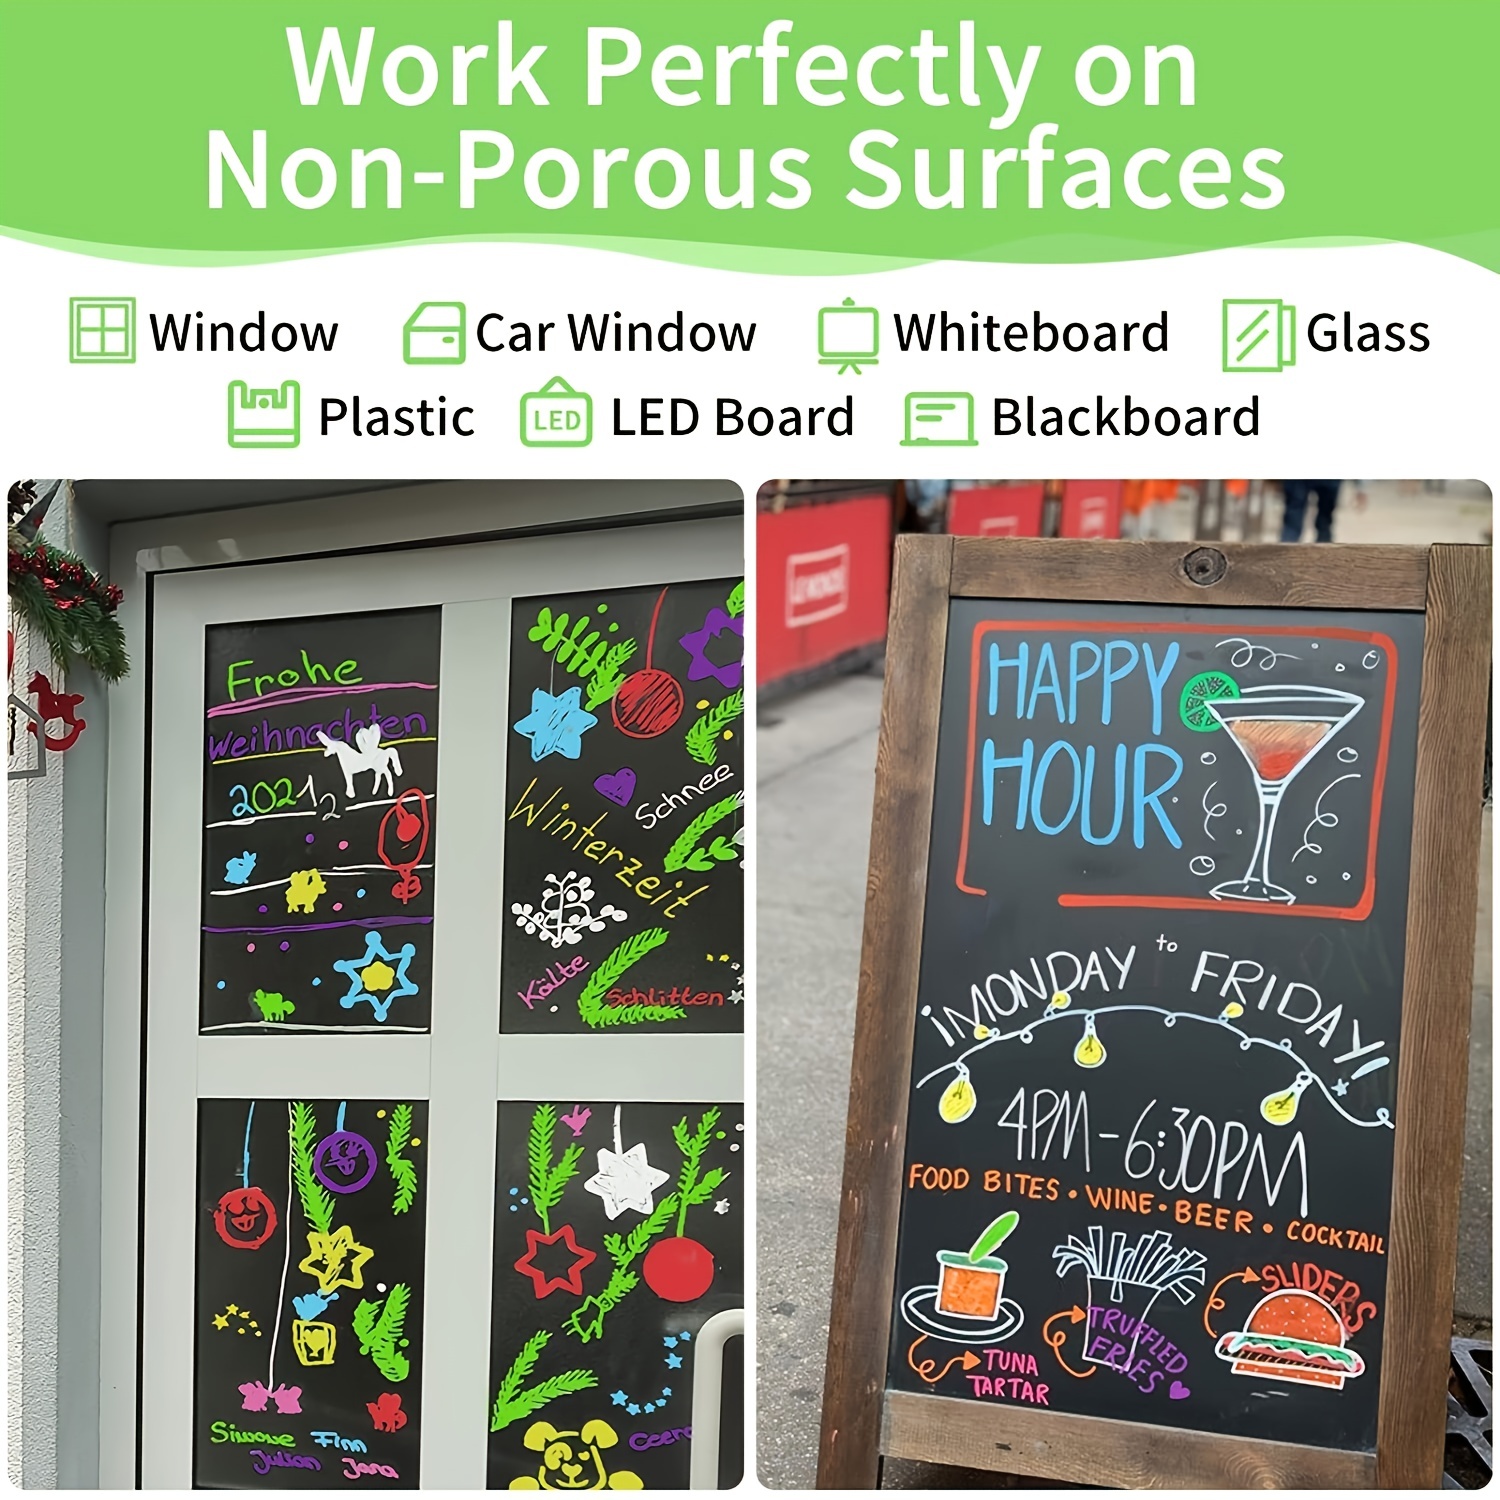 The Glowhouse Premium Chalk Markers Liquid Chalk Washable Window